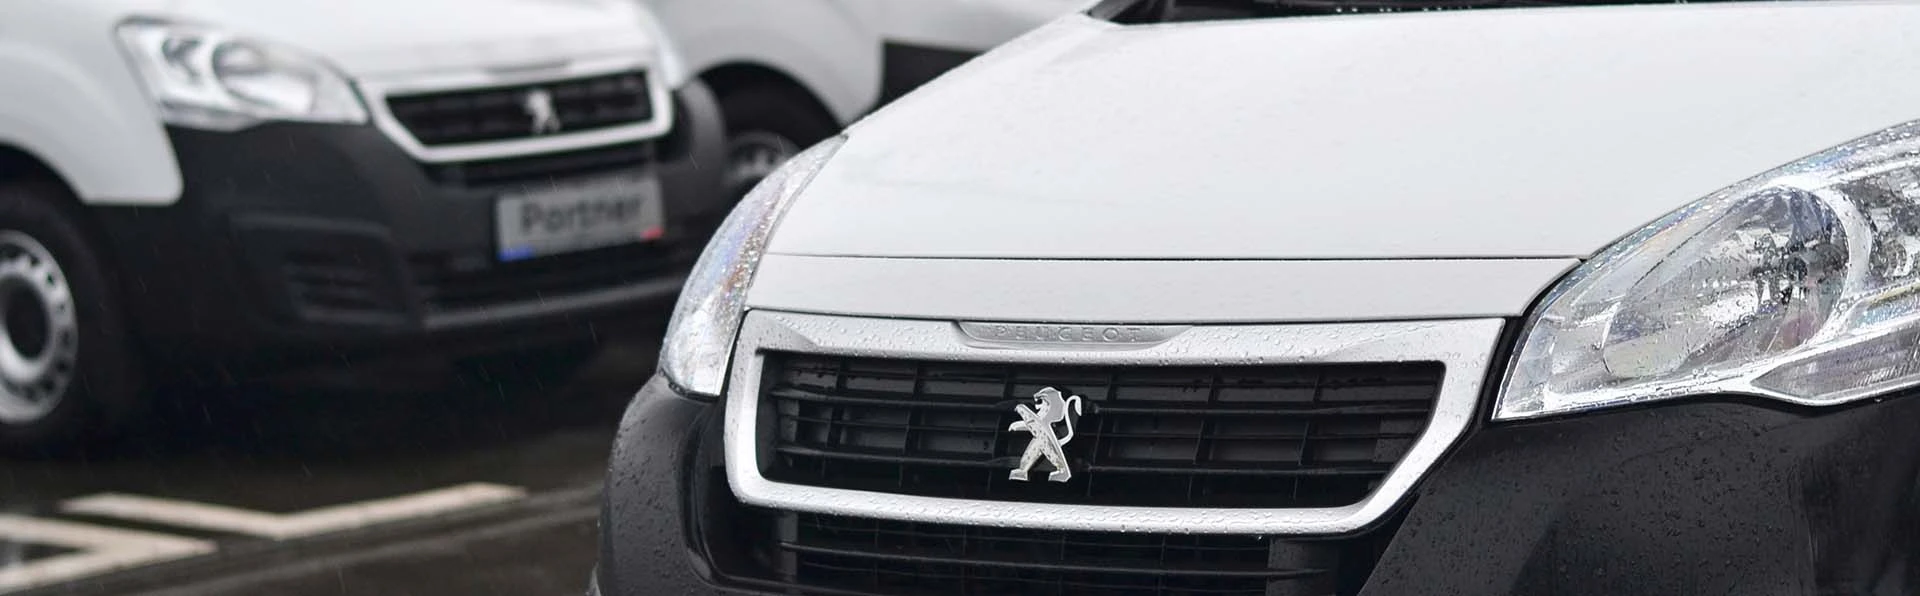 Electric Van Lease Review: Peugeot e-Partner